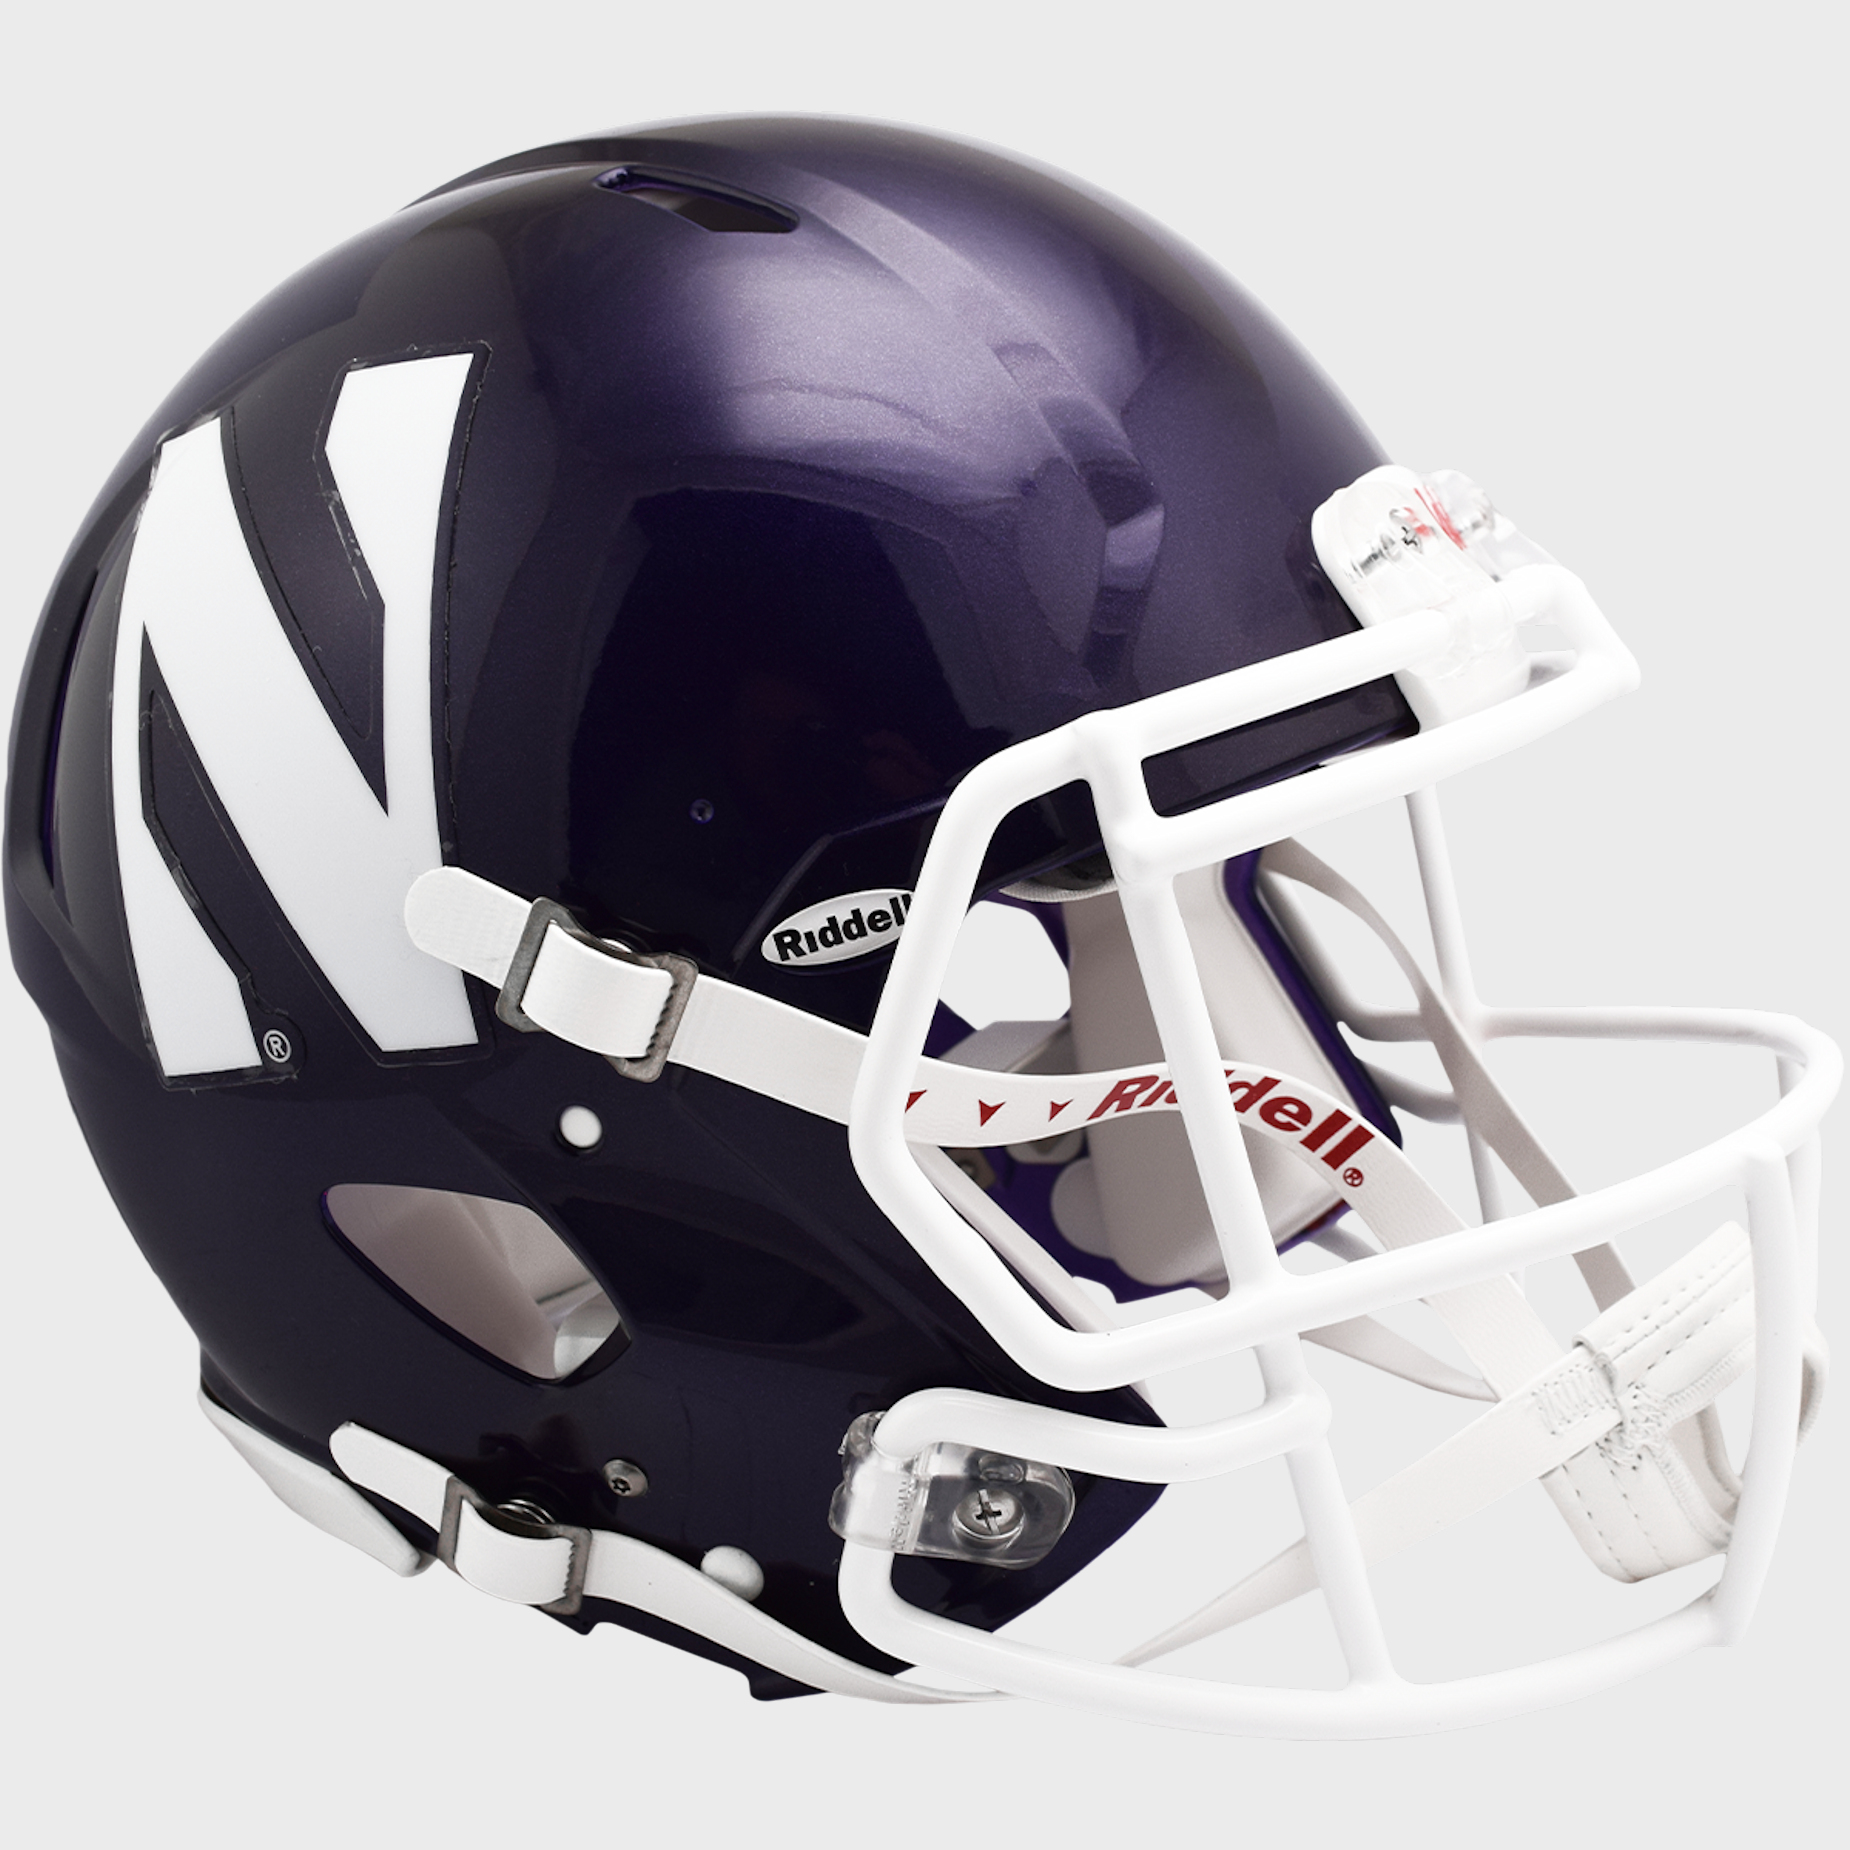 Northwestern Wildcats authentic full size helmet